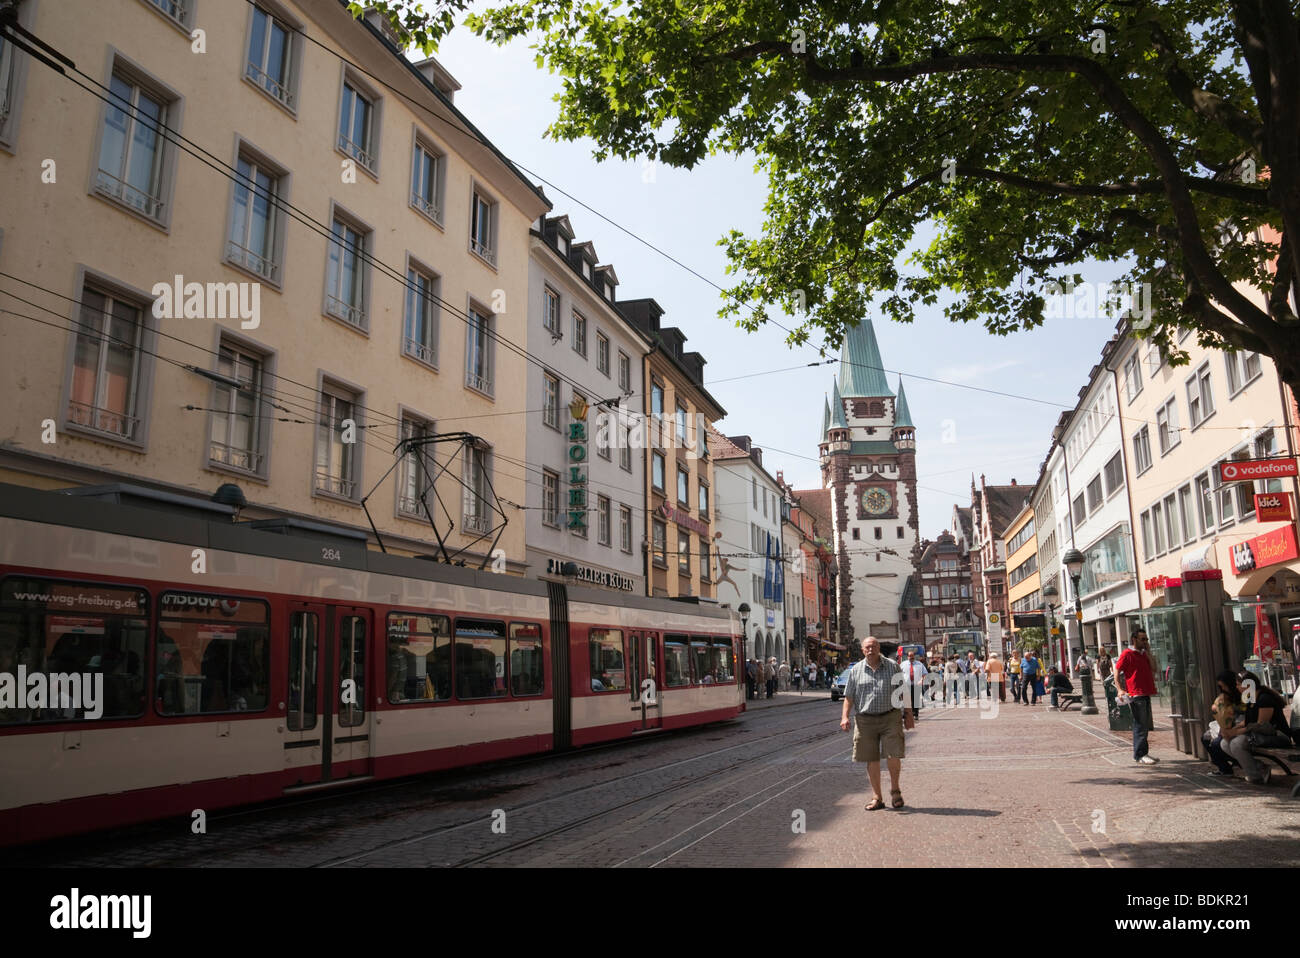 Système de transport en commun tramway Fribourg VAG en zone piétonne, dans le centre-ville. Freiburg, Allemagne, Europe. Banque D'Images